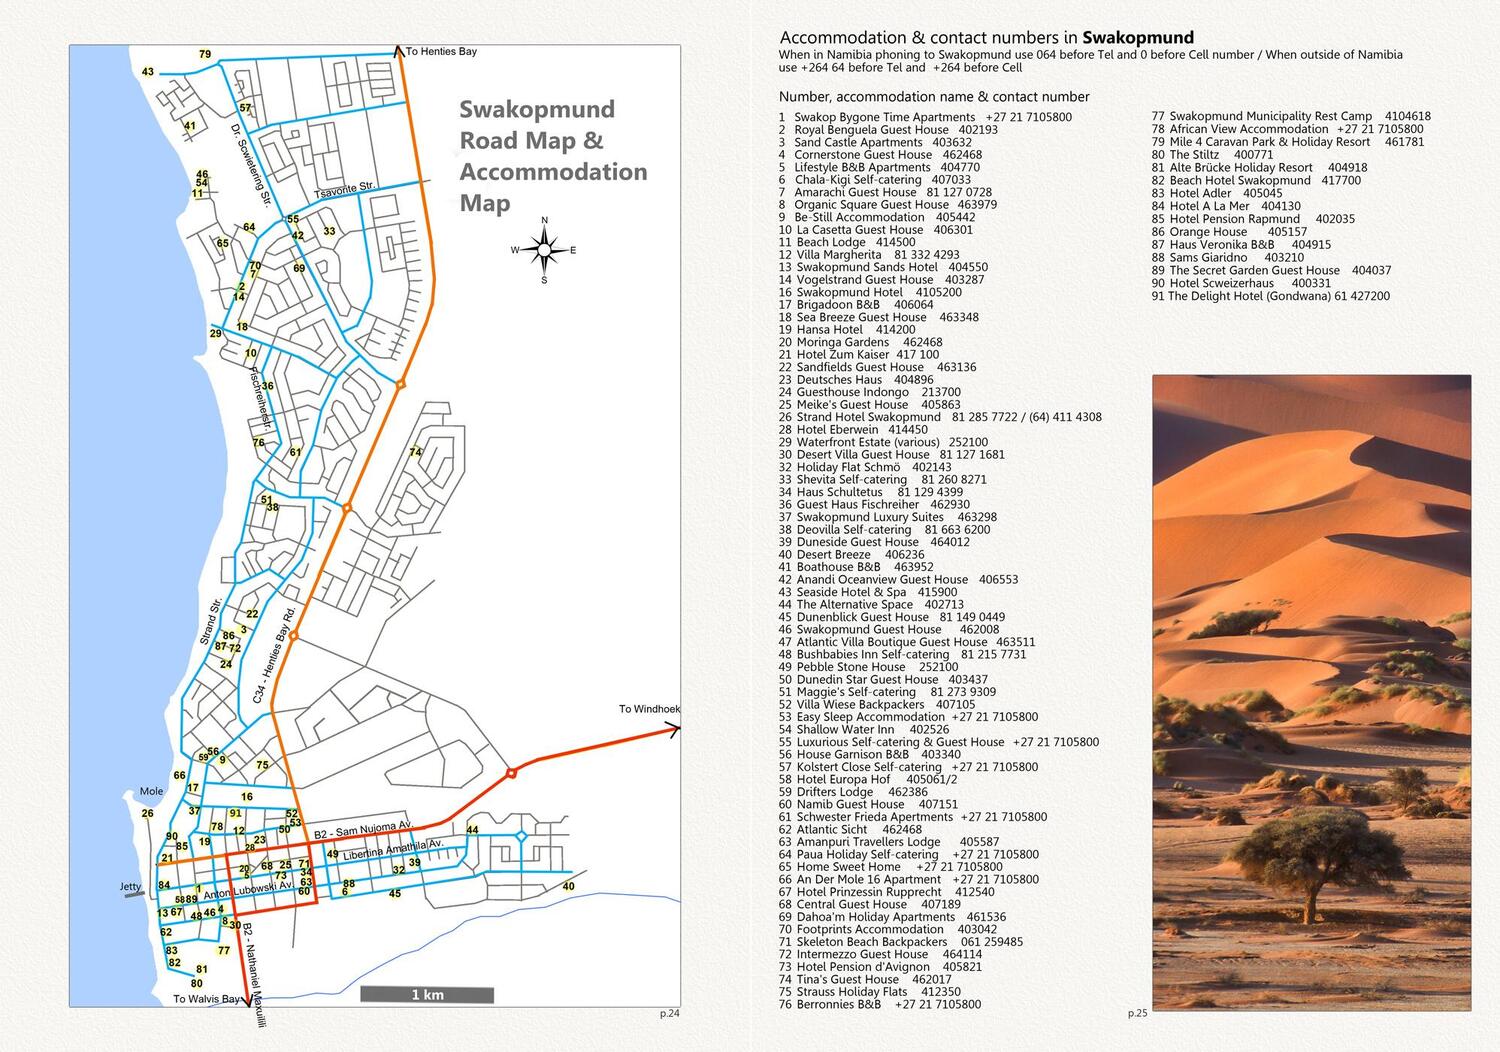 Bild: 9783947895427 | Detaillierte NAMIBIA Reisekarte - NAMIBIA ROAD MAP (1:1.160.000)